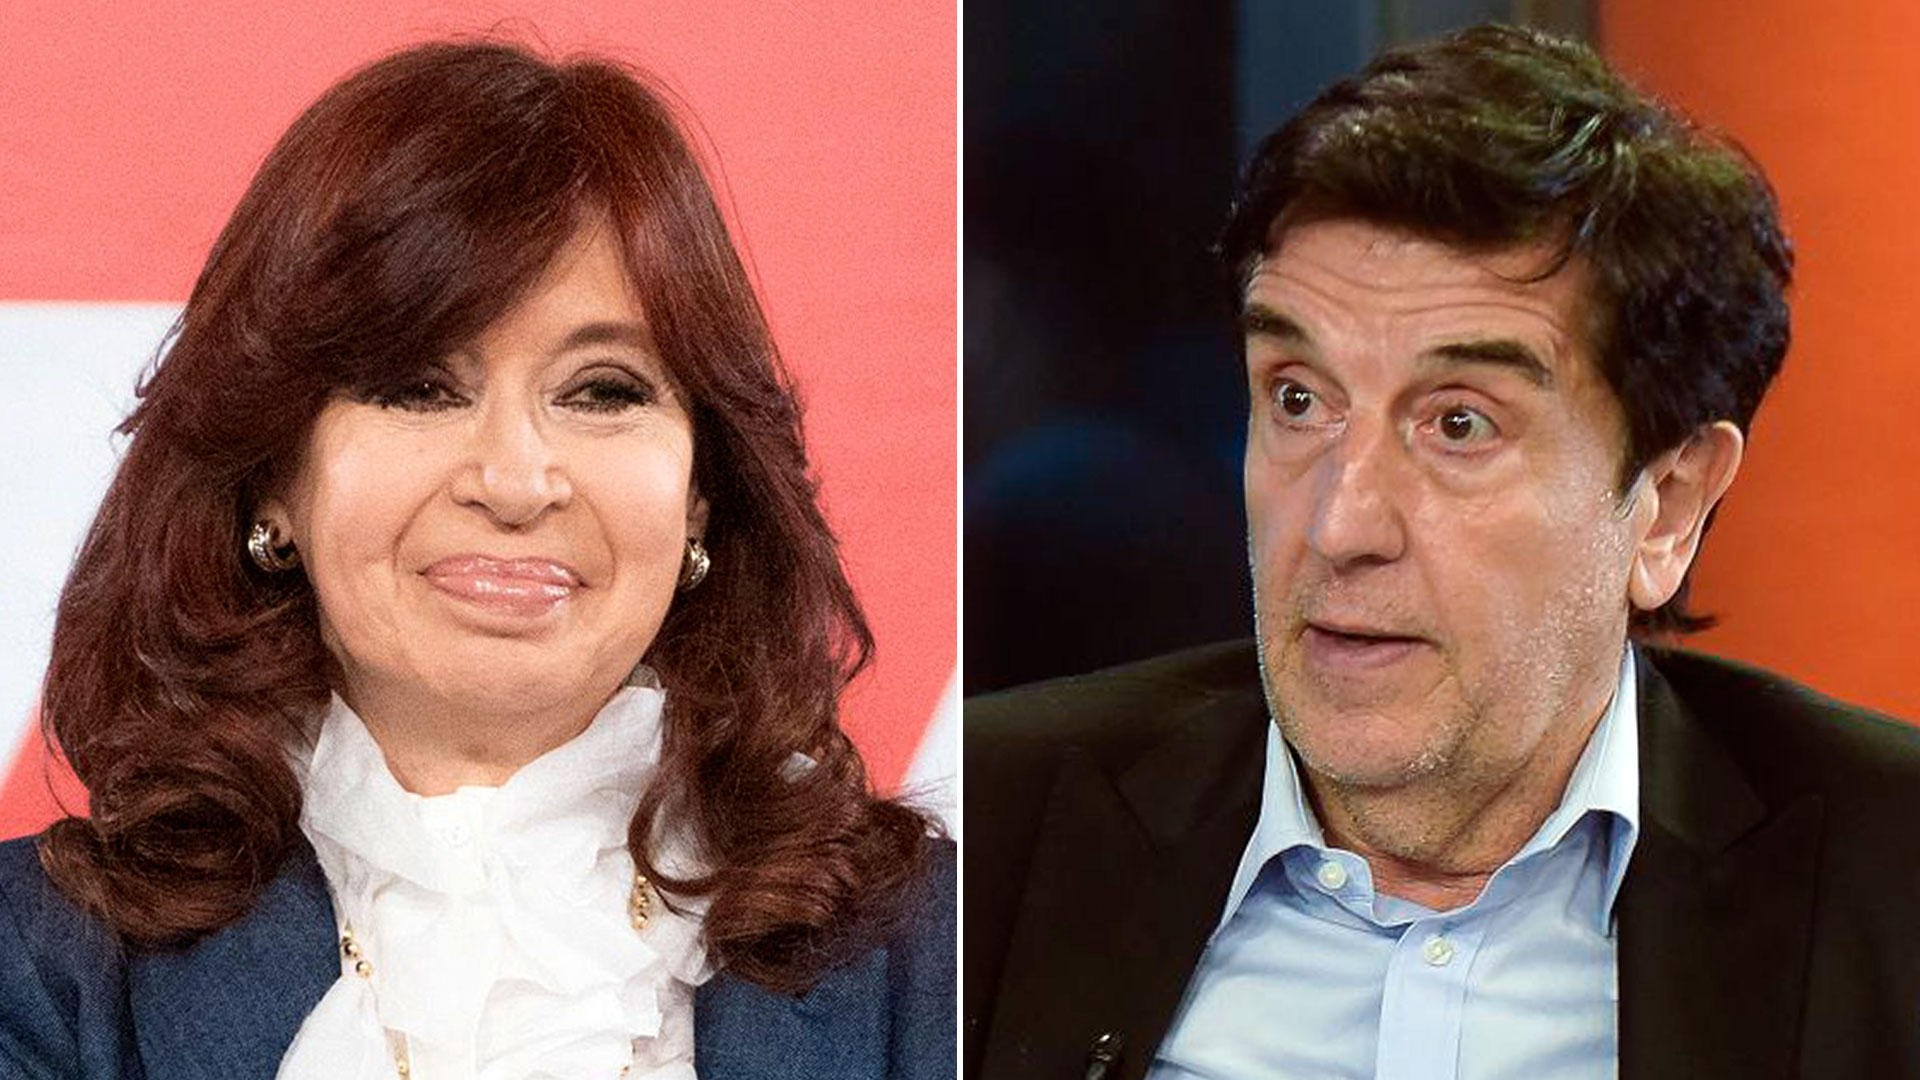 Cristina Kirchner and Carlos Melconian